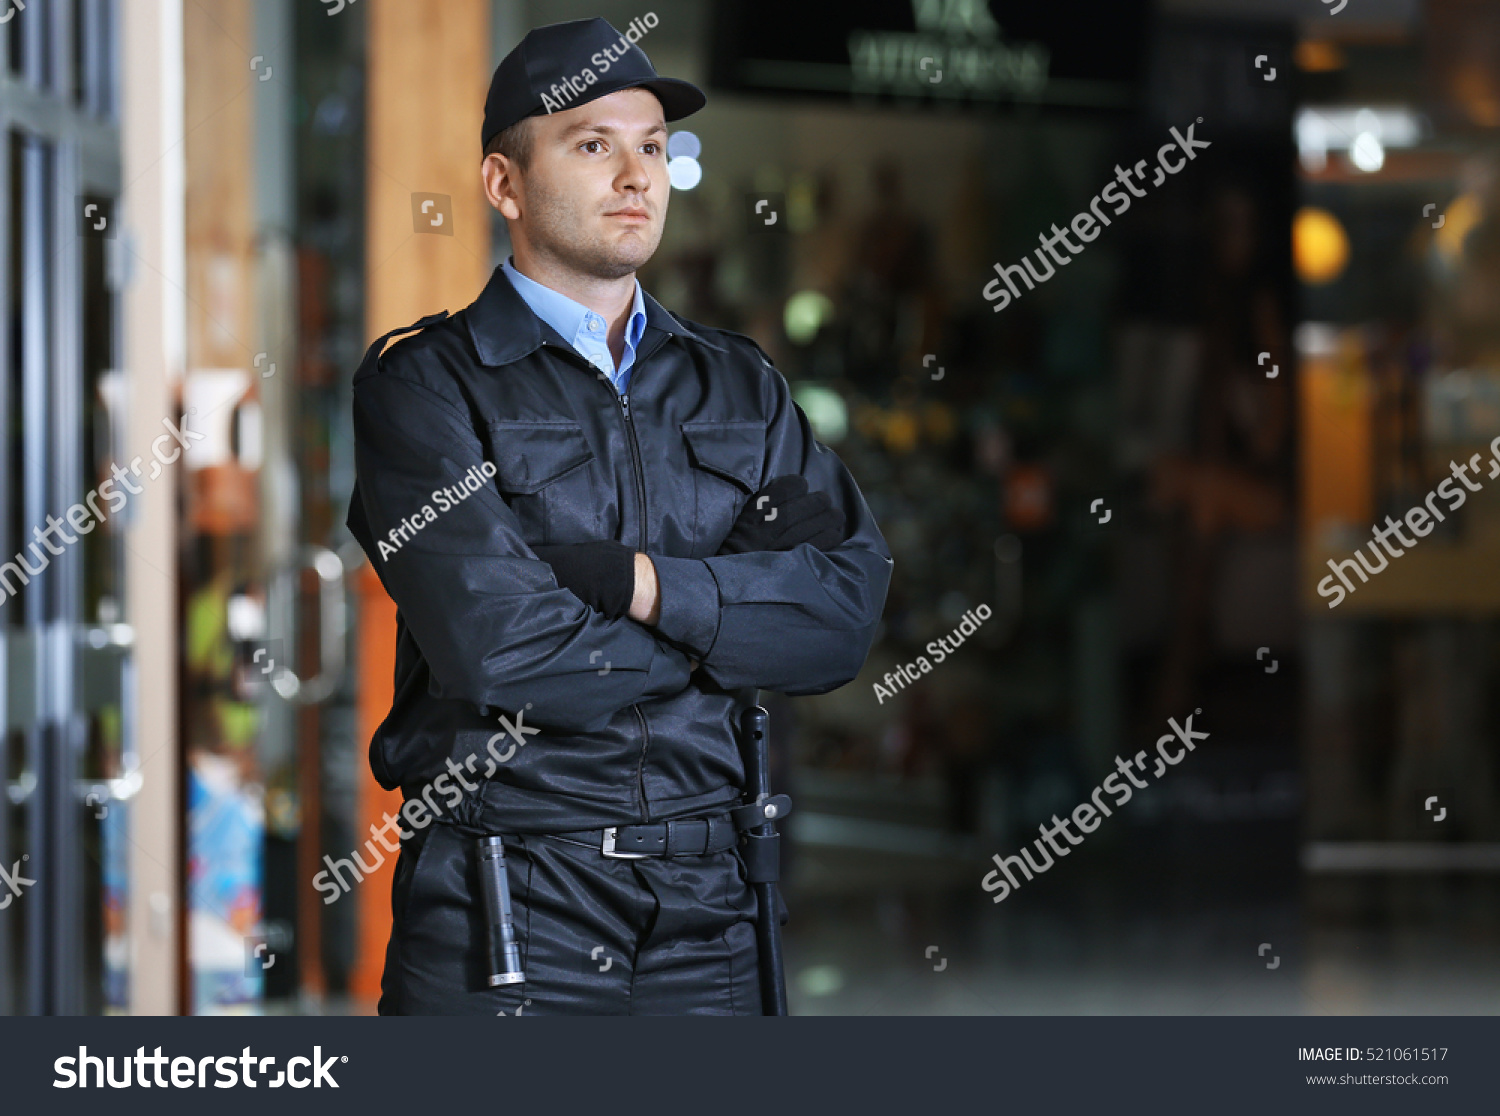 Security man standing indoors #521061517